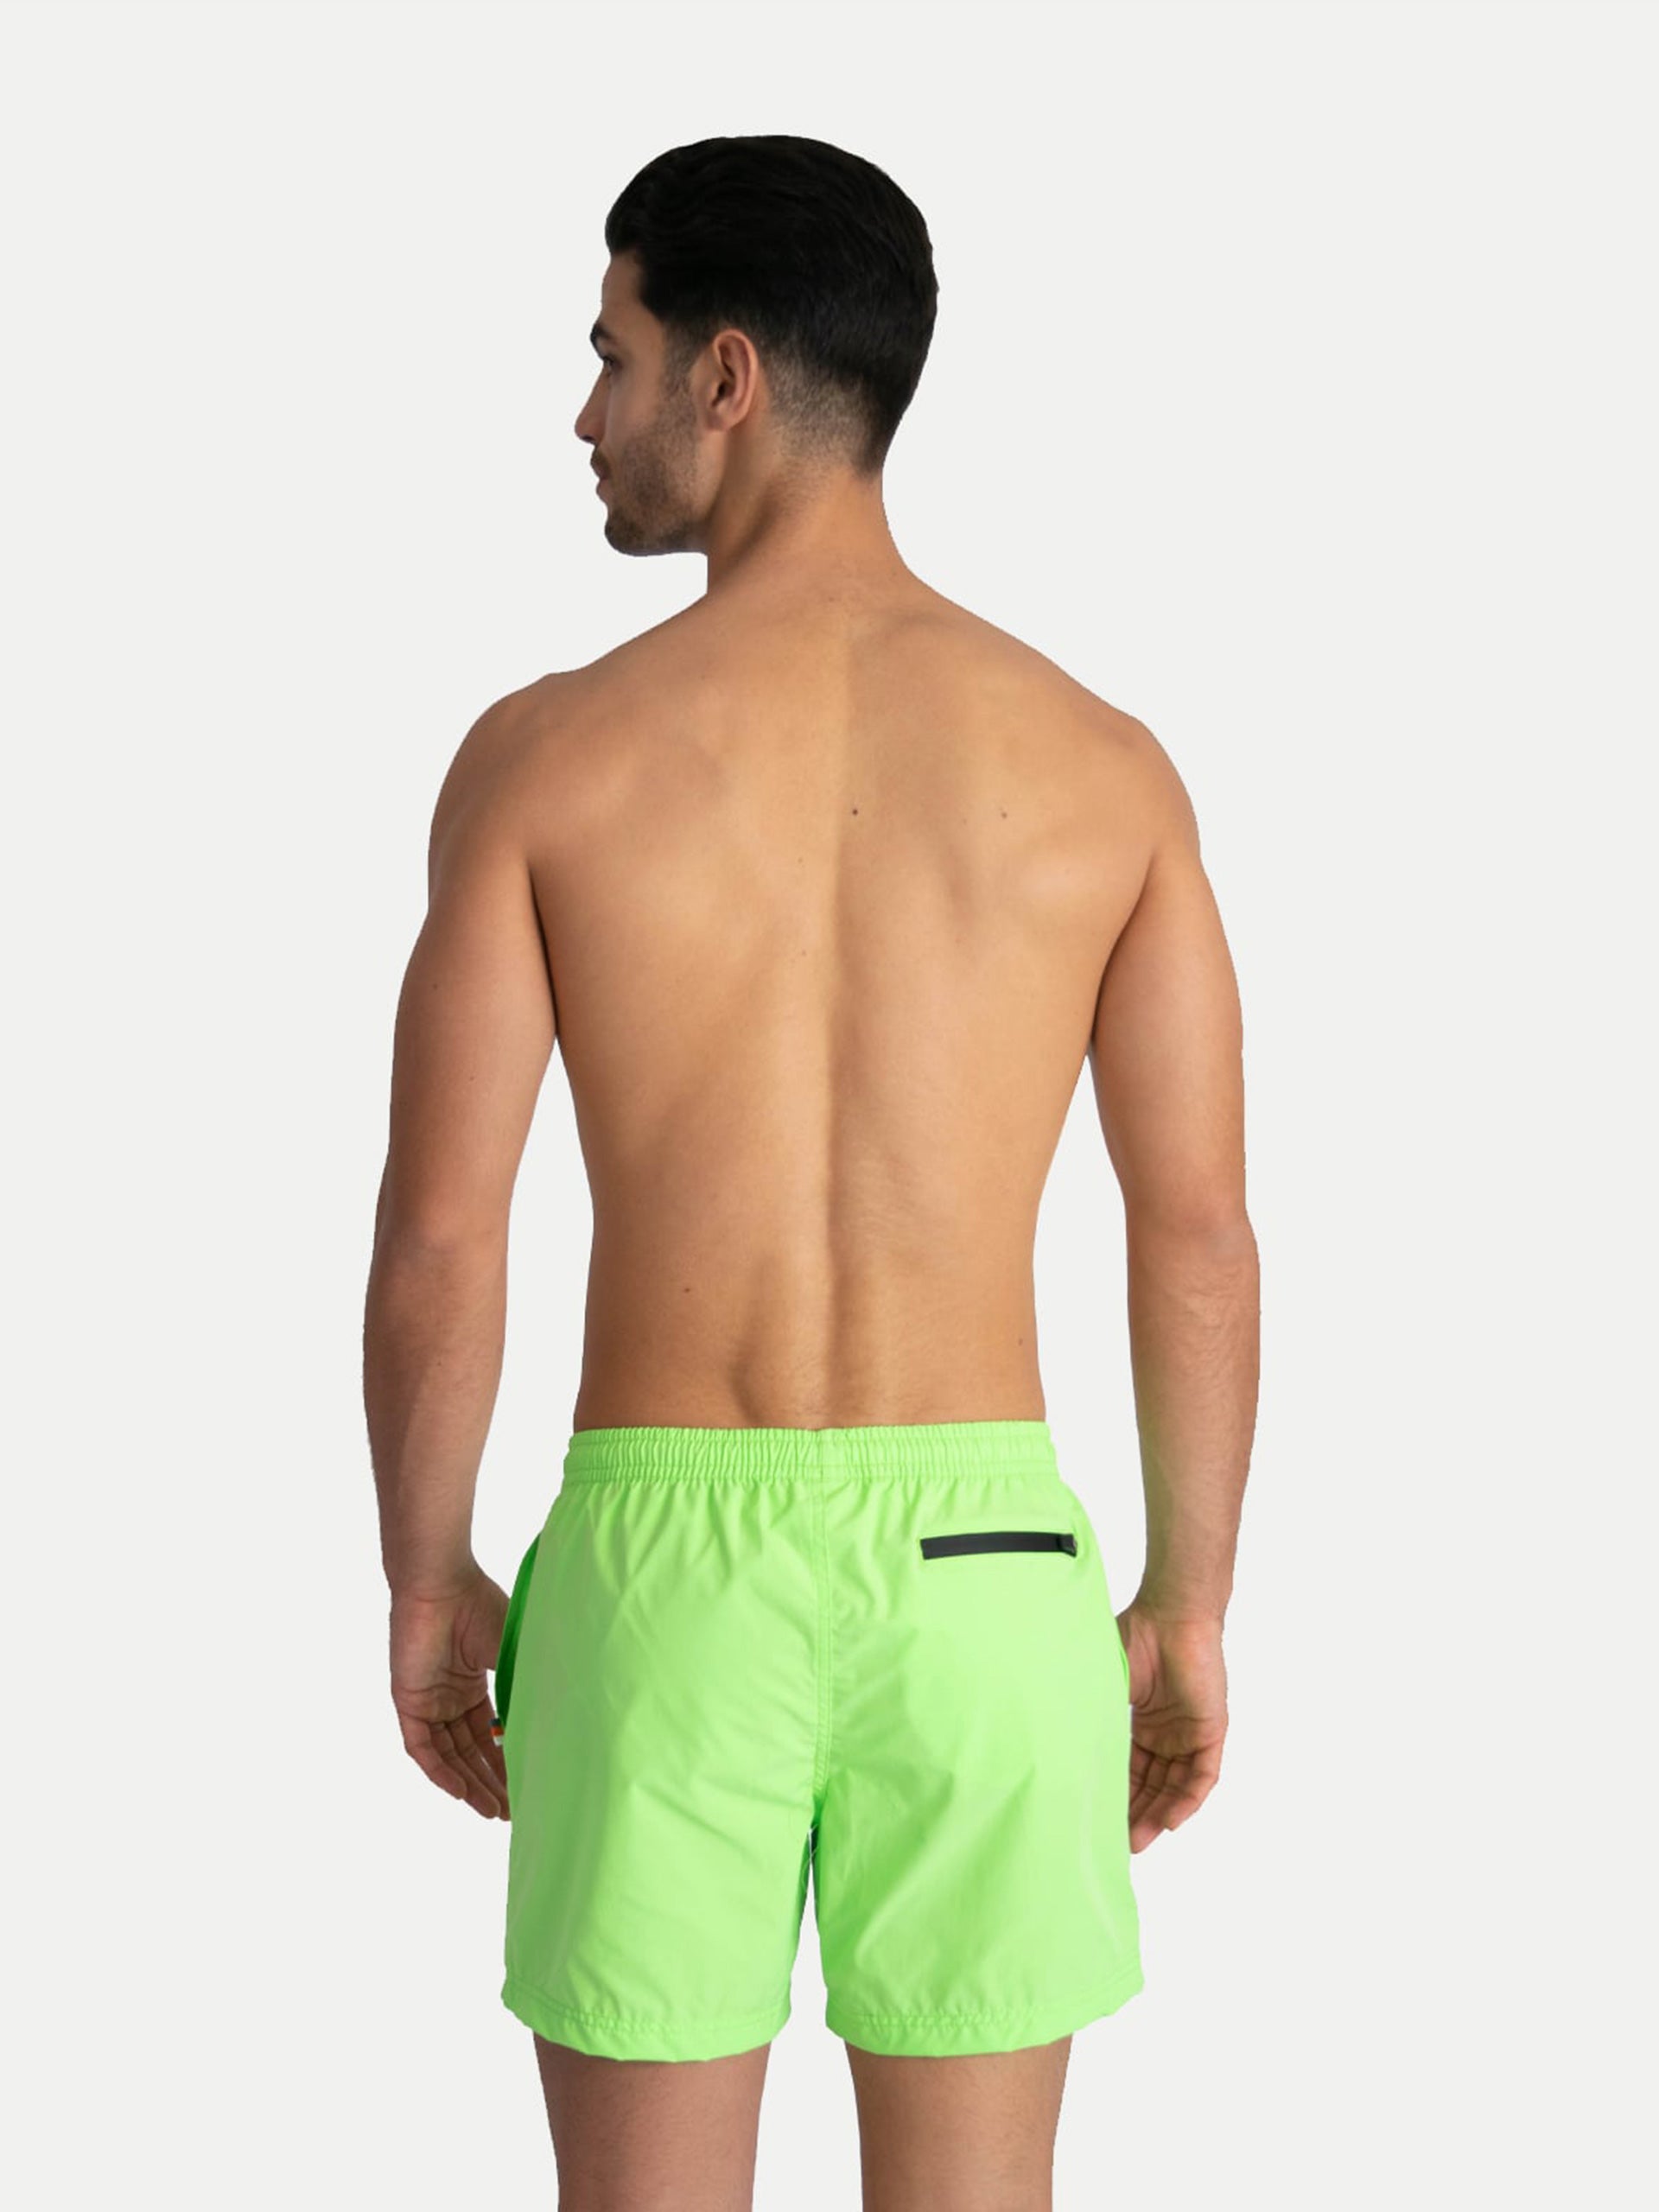 ‘Basic Green’ Swim Trunks for Men by 98 Coast Av.